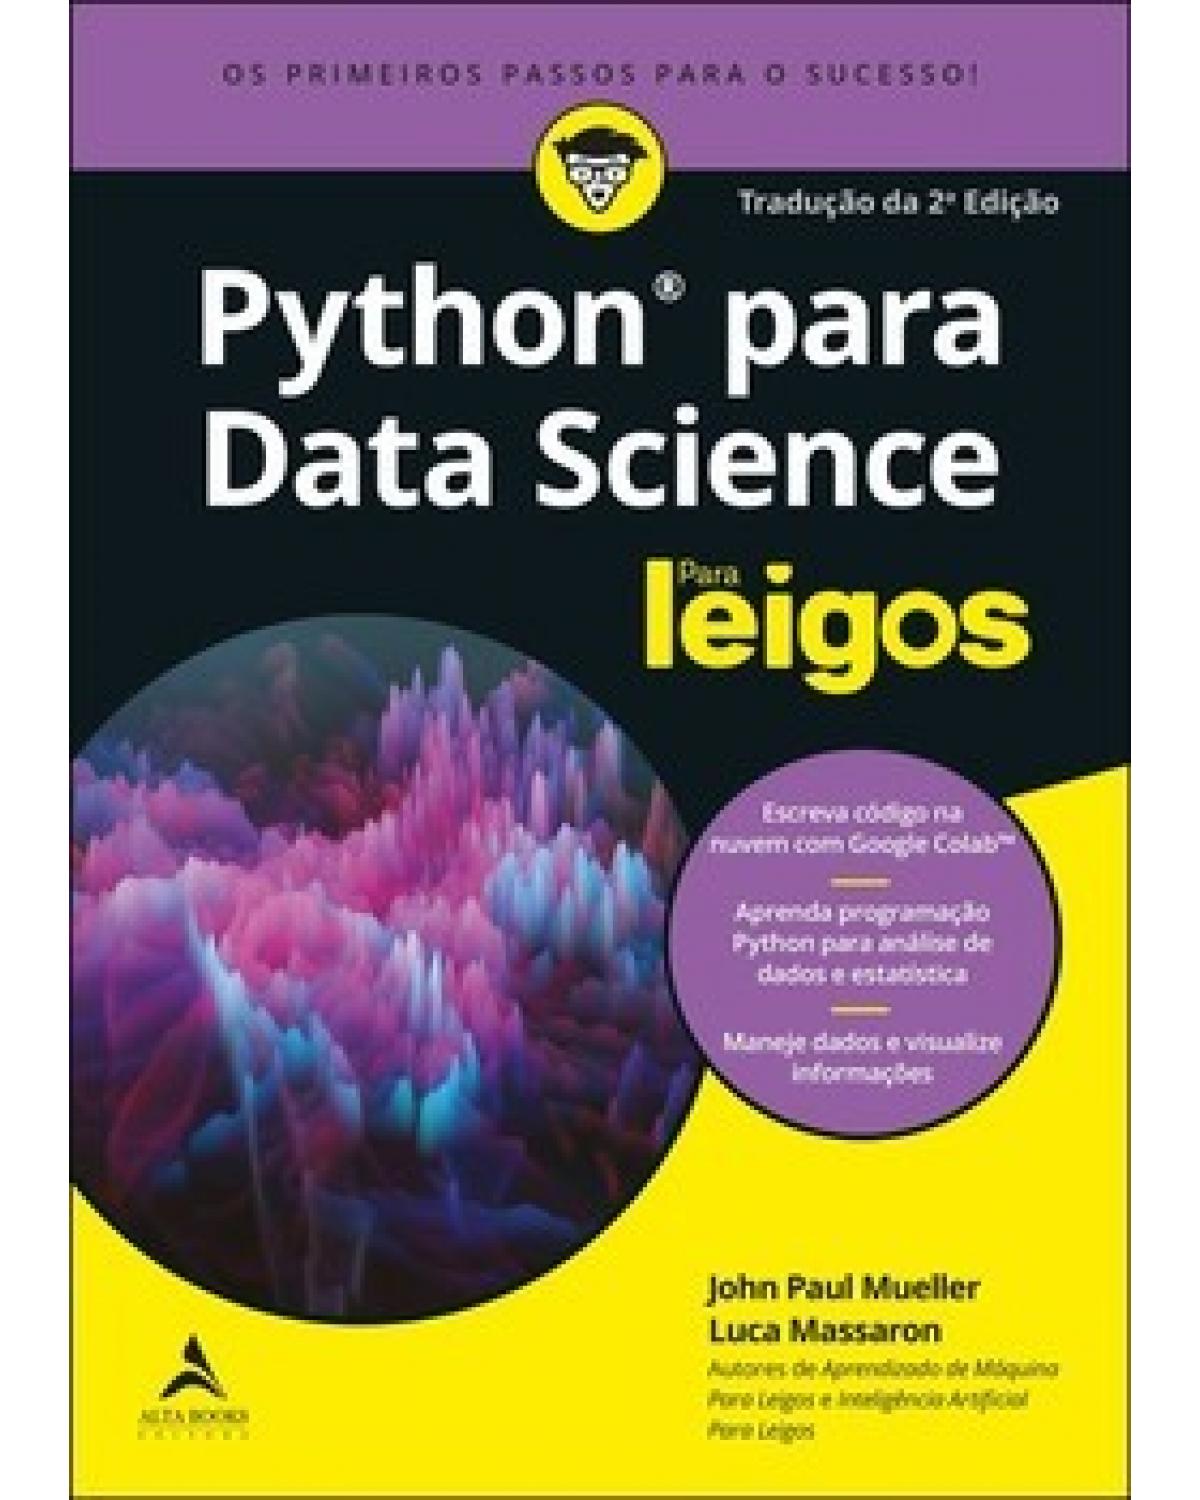 Python para Data Science para leigos - 2ª Edição | 2020